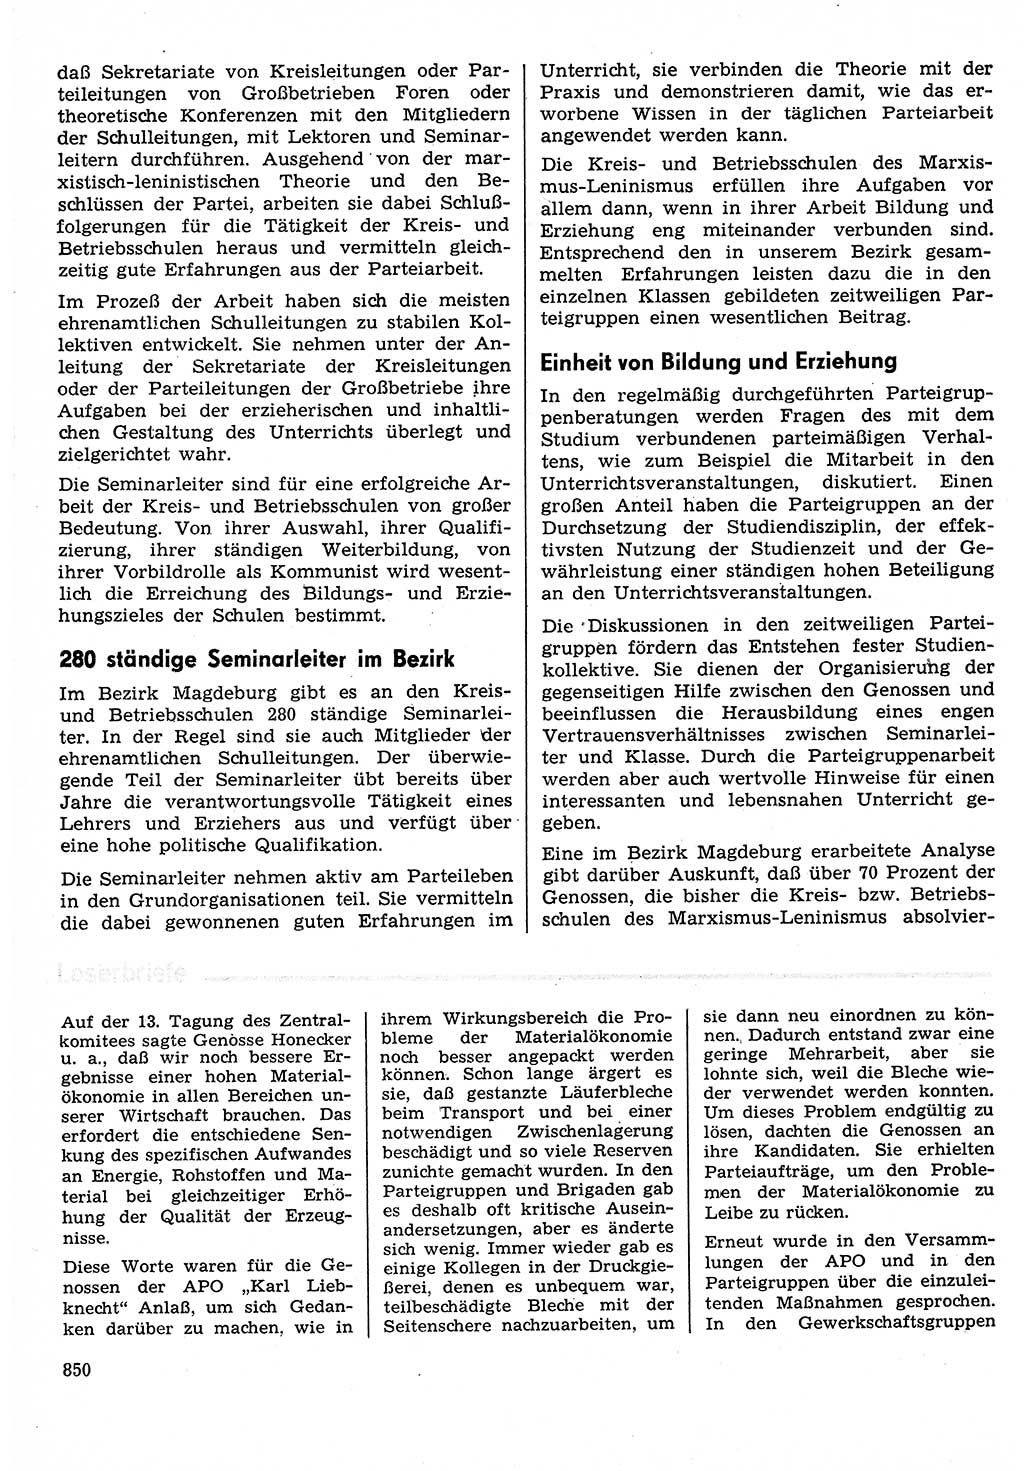 Neuer Weg (NW), Organ des Zentralkomitees (ZK) der SED (Sozialistische Einheitspartei Deutschlands) für Fragen des Parteilebens, 30. Jahrgang [Deutsche Demokratische Republik (DDR)] 1975, Seite 850 (NW ZK SED DDR 1975, S. 850)